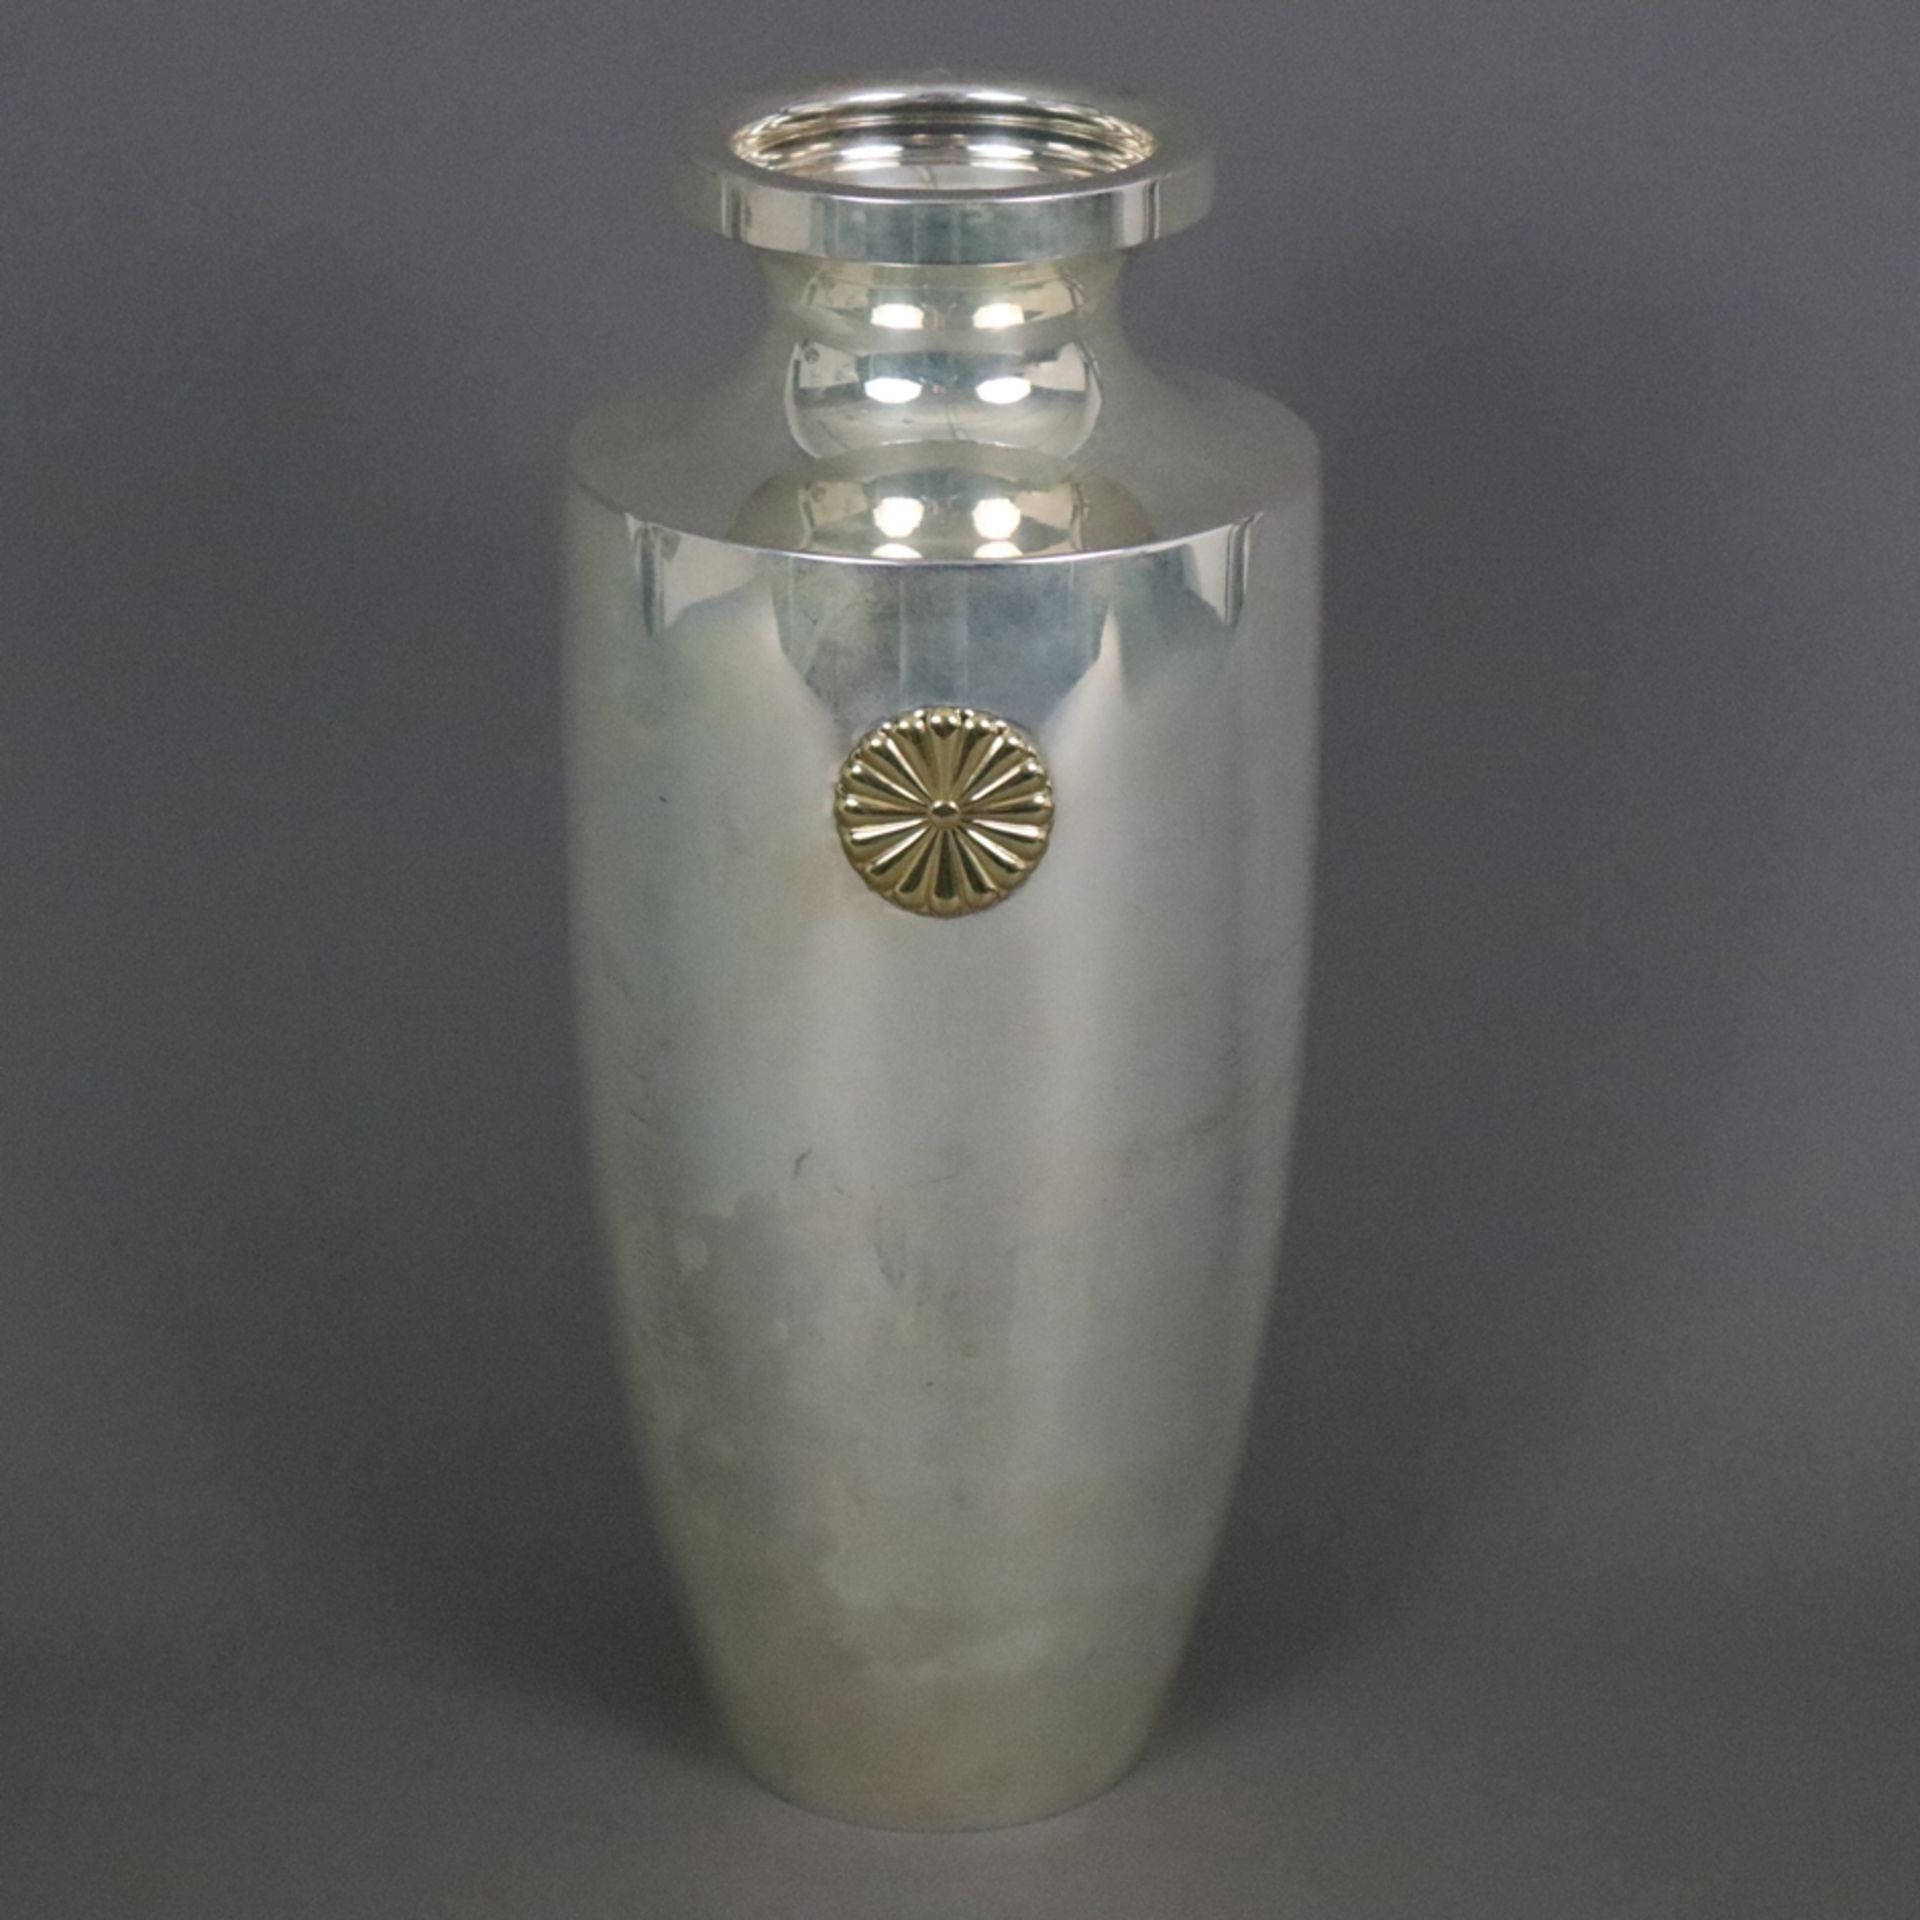 Silber-Vase - Japan, 20. Jh., Massivsilber, sich nach oben erweiternde Form mit kurzem Hals und aus